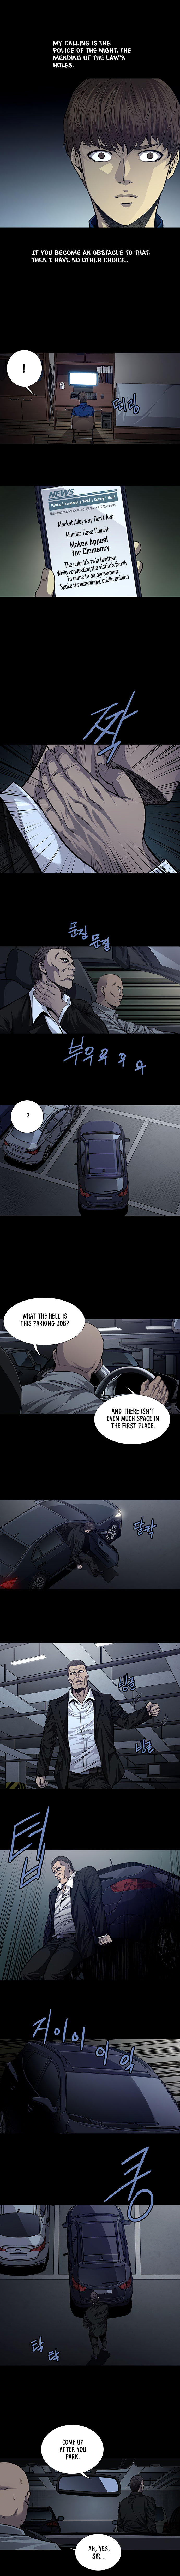 Vigilante Chapter 35 - Page 2